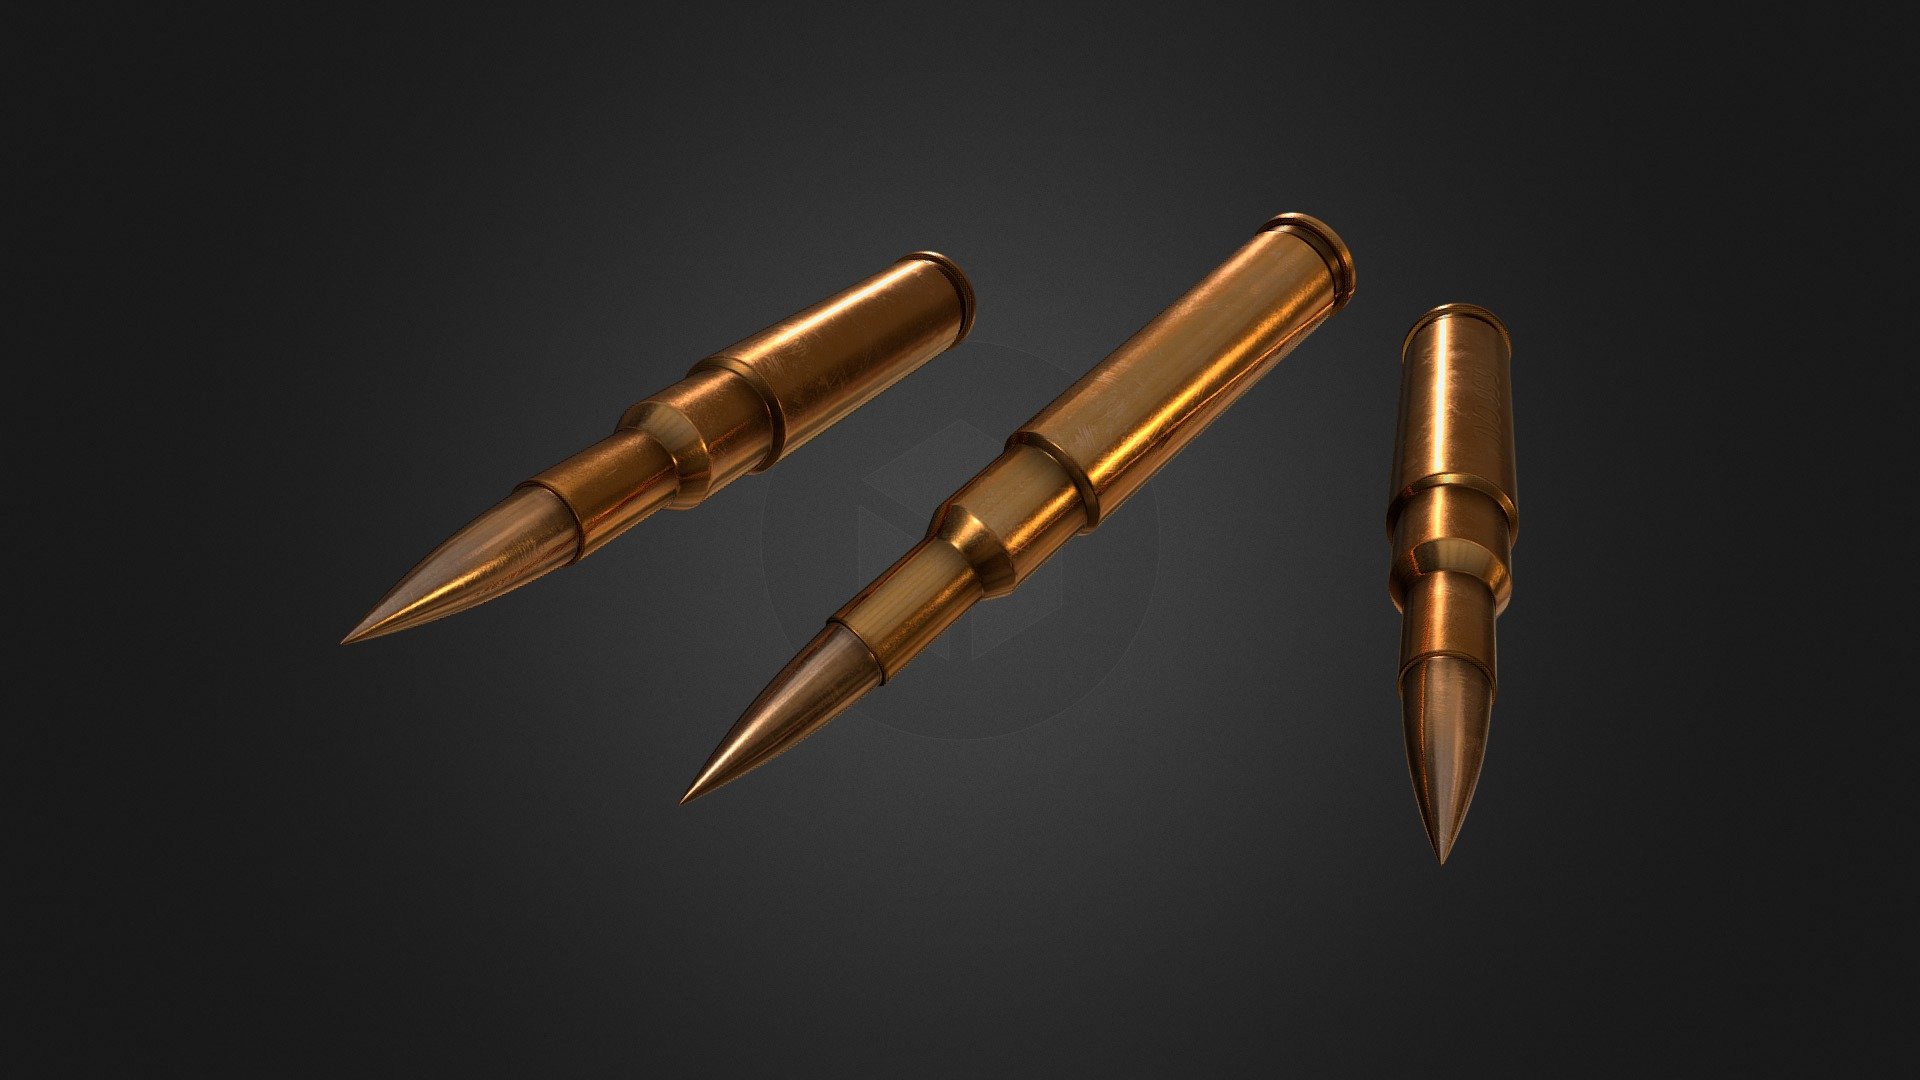 highpoly high resolution texture 4k 5.56 caliber bullet asset 3d model